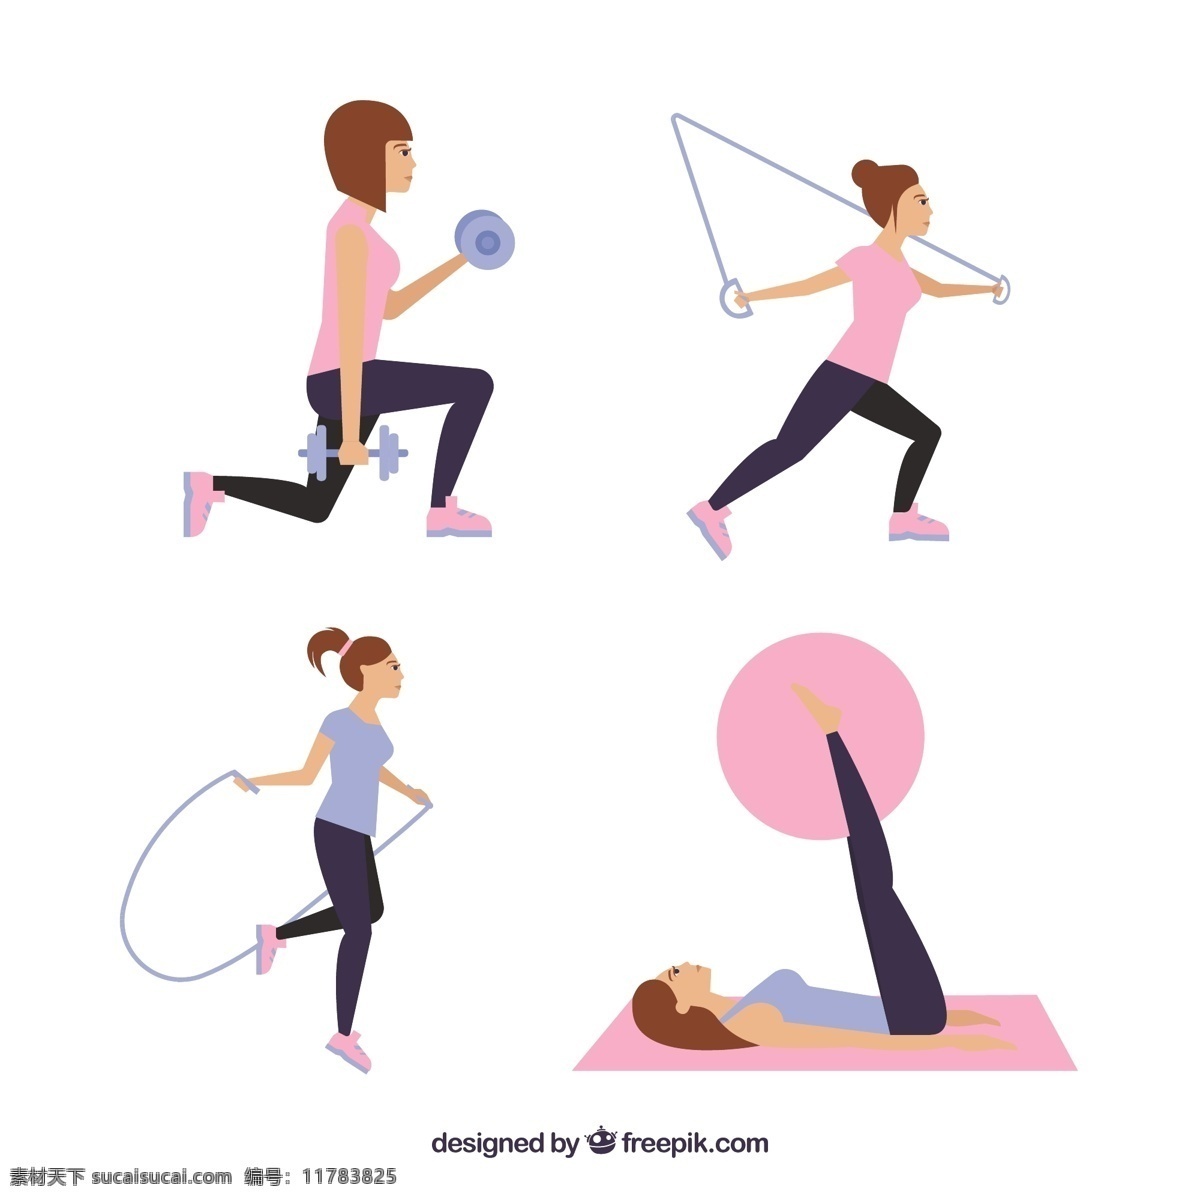 妇女练习练习 运动 健身 跑步 跳绳 网球 球 健康 元素 训练 体重 女性 跳跃 生活方式 白色